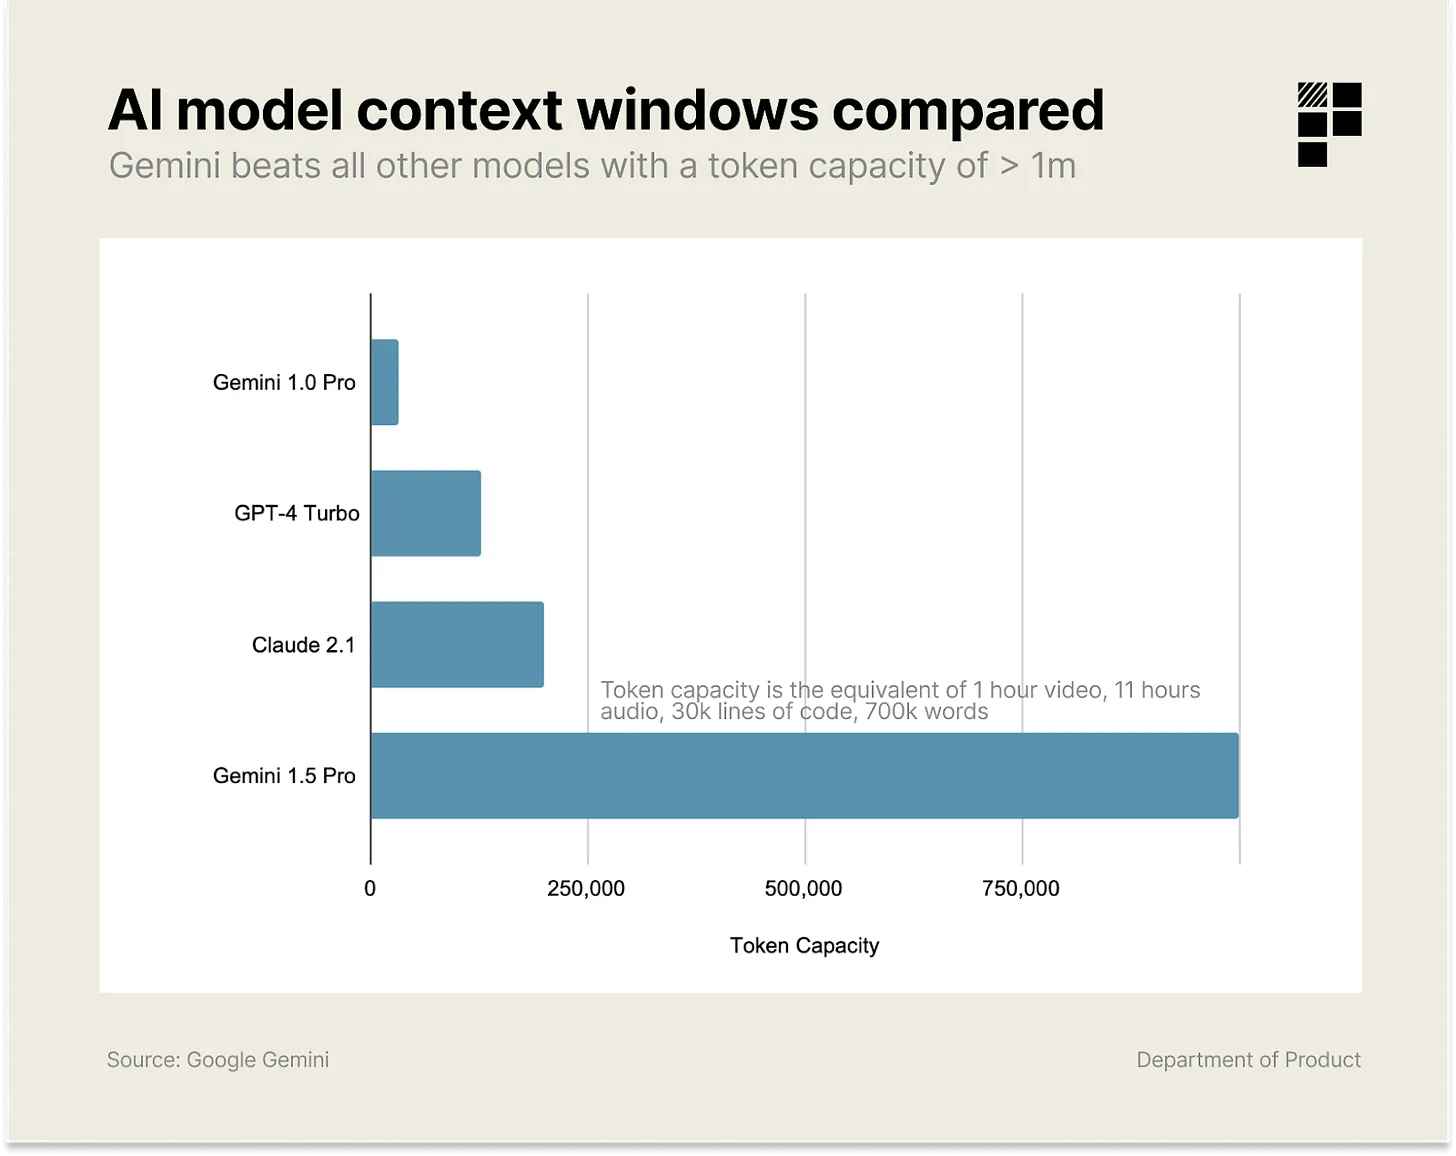 AI model windows compared